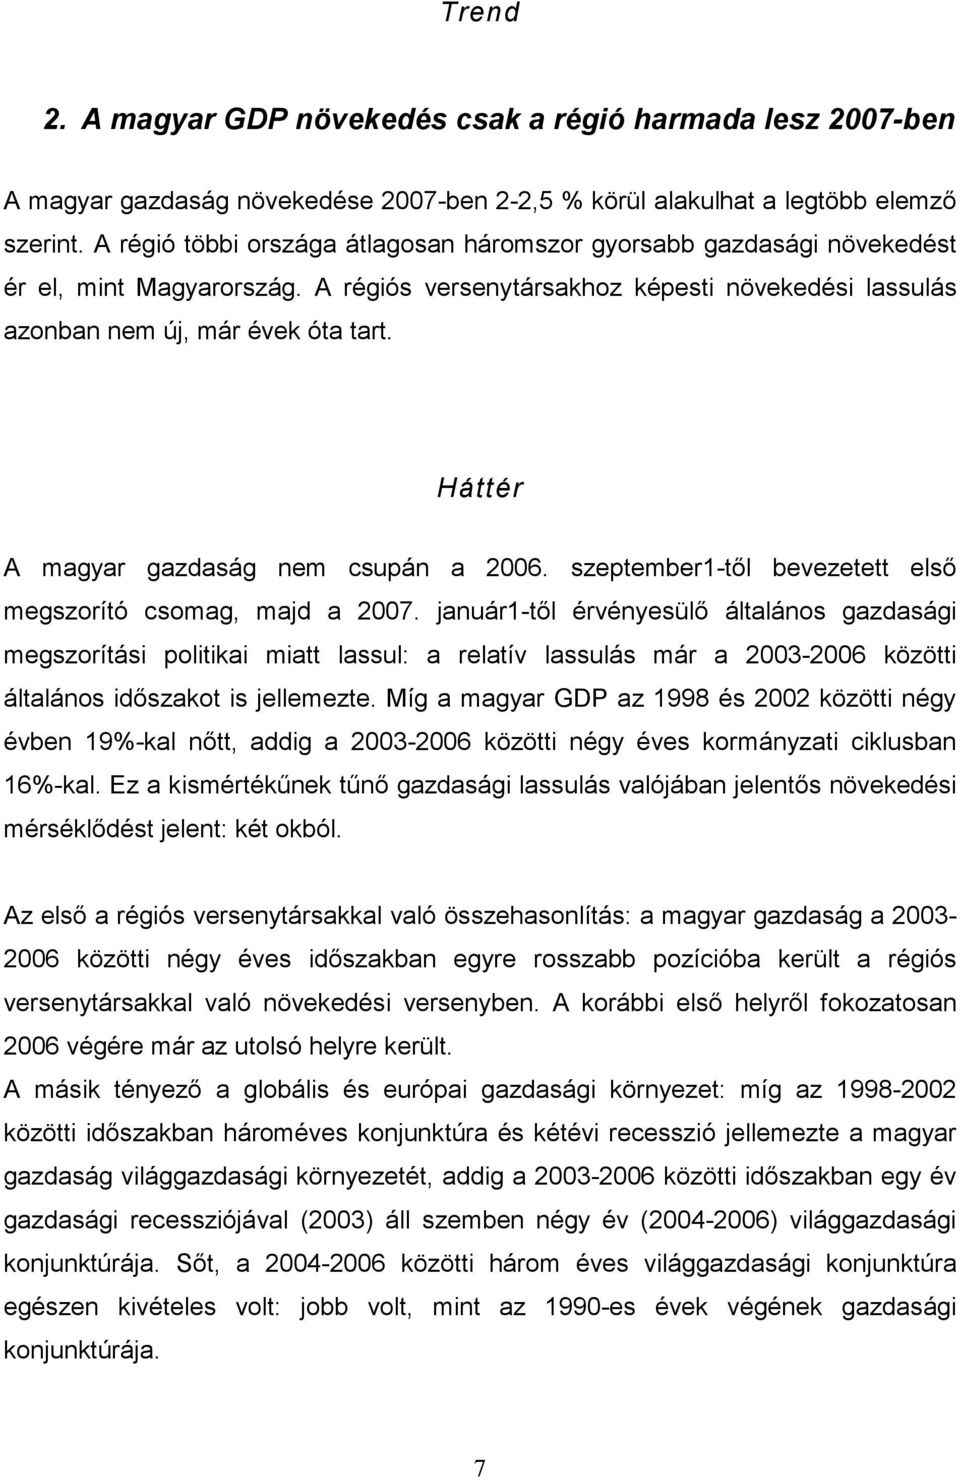 Háttér A magyar gazdaság nem csupán a 2006. szeptember1-től bevezetett első megszorító csomag, majd a 2007.